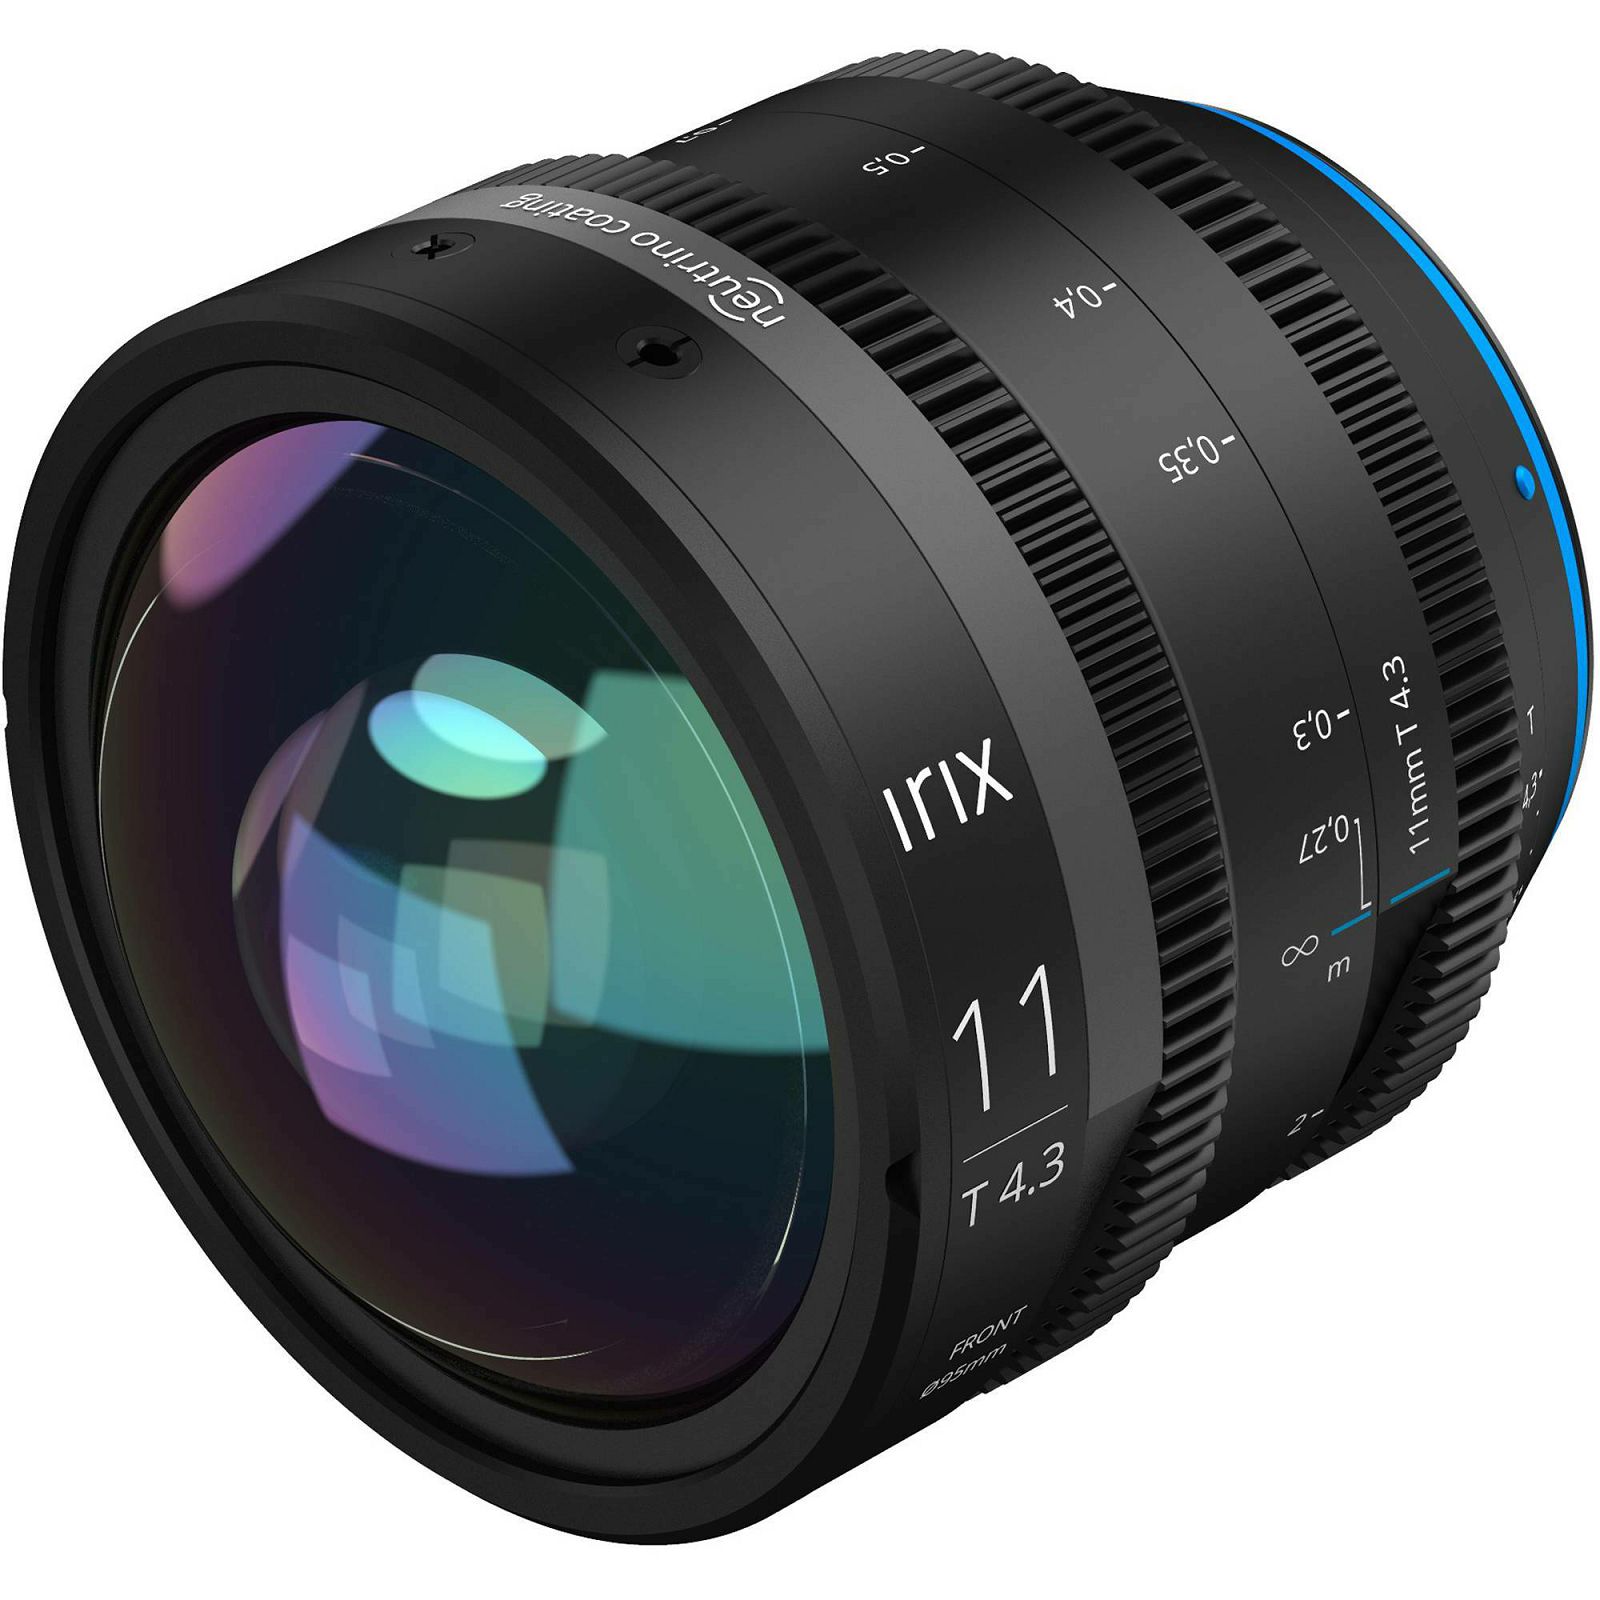 Irix Cine 11mm T4.3 Metric širokokutni objektiv za Sony E-mount